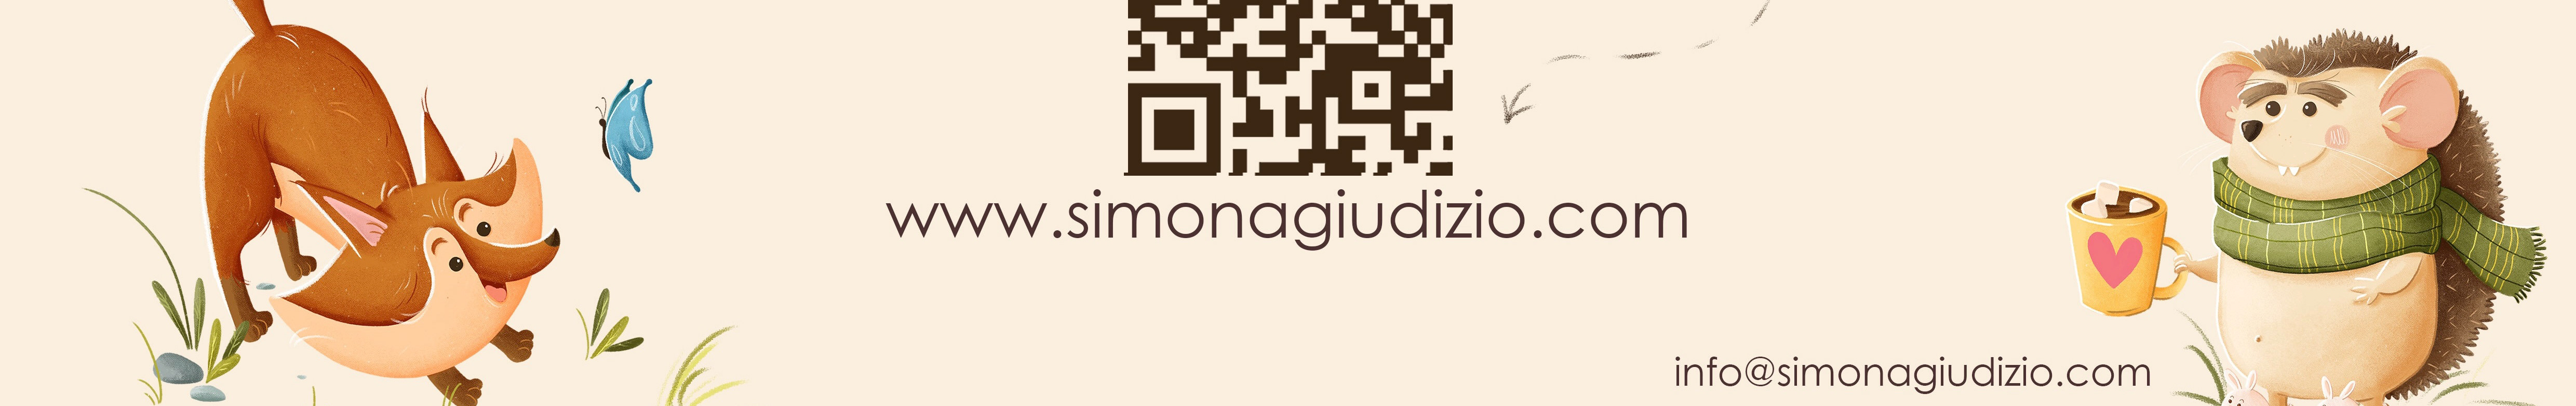 Simona Giudizio's profile banner